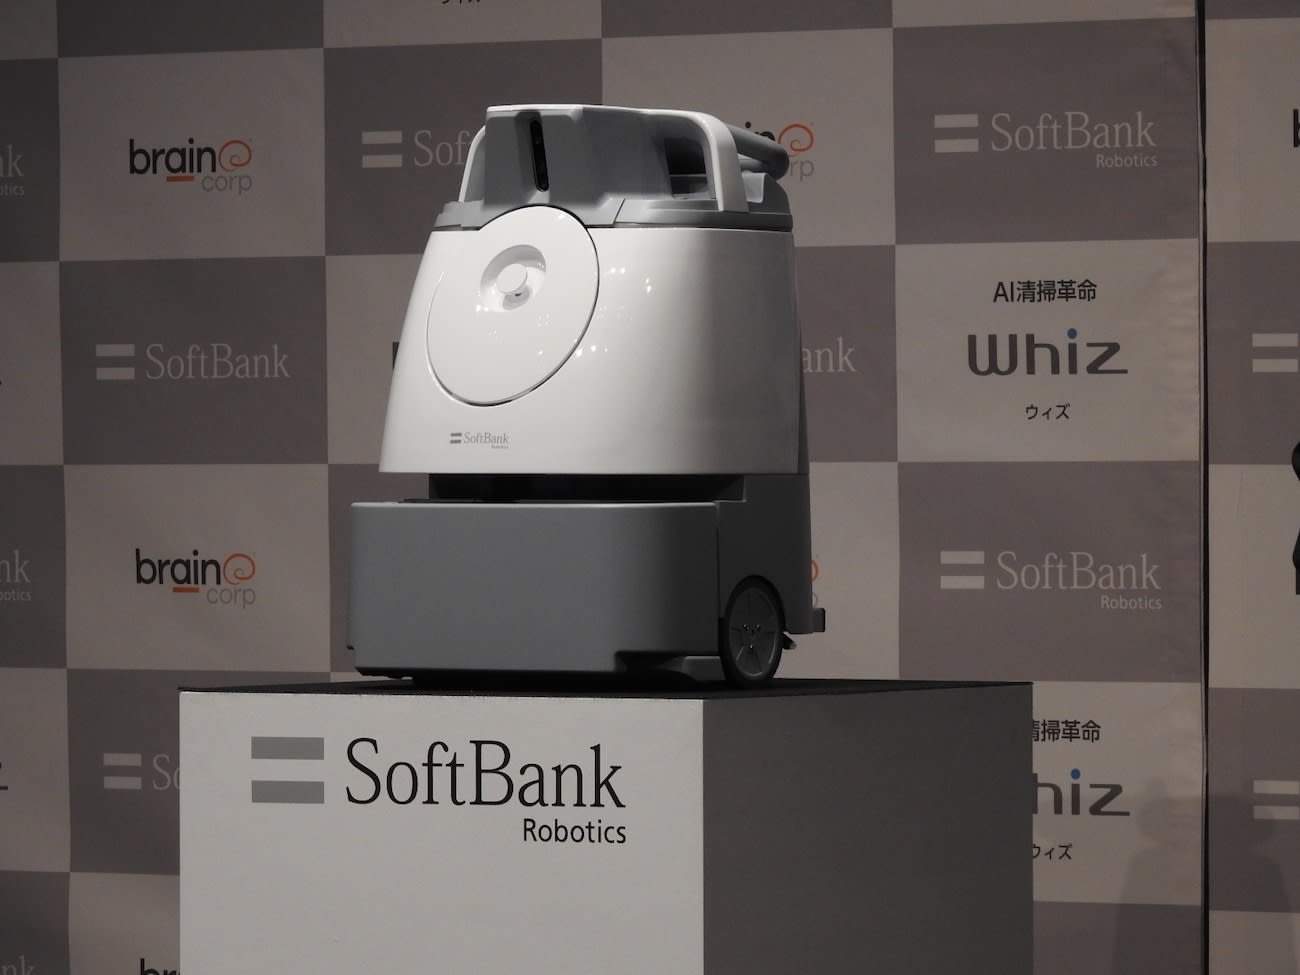 ソフトバンク オフィス清掃ロボット Whiz を月額2万5000円で3月以降提供開始 Engadget 日本版